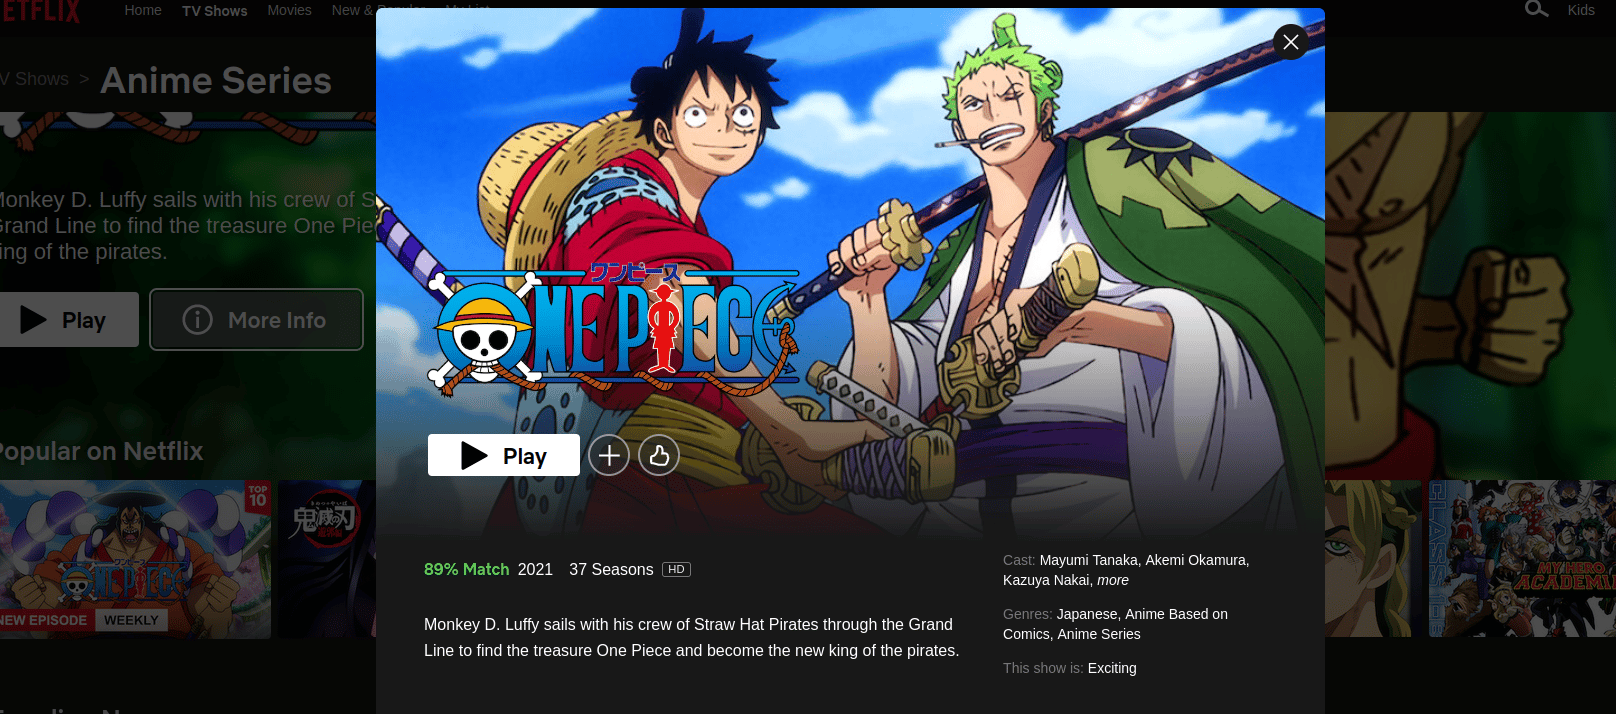 Ver One Piece temporada 21 episodio 1 en streaming